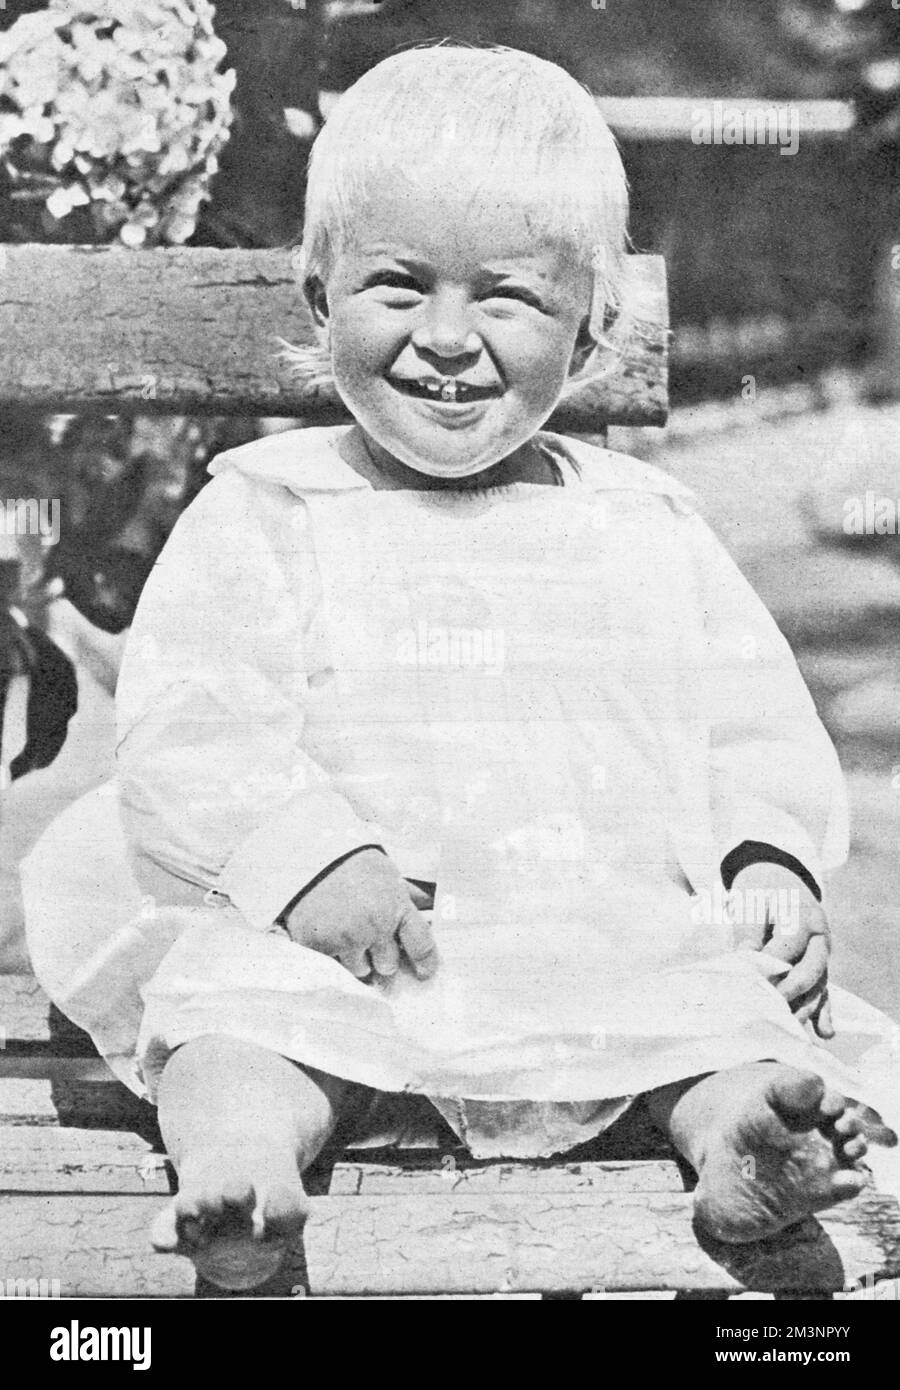 Principe Filippo, Duca di Edimburgo, nato il 10th giugno 1921, figlio del Principe Andrea di Grecia e della Principessa Alice di Battenburg. Consorte della Regina Elisabetta II Nella foto abbiamo 1 anni come giovane visitatore in Inghilterra nel 1922. Data: 1922 Foto Stock